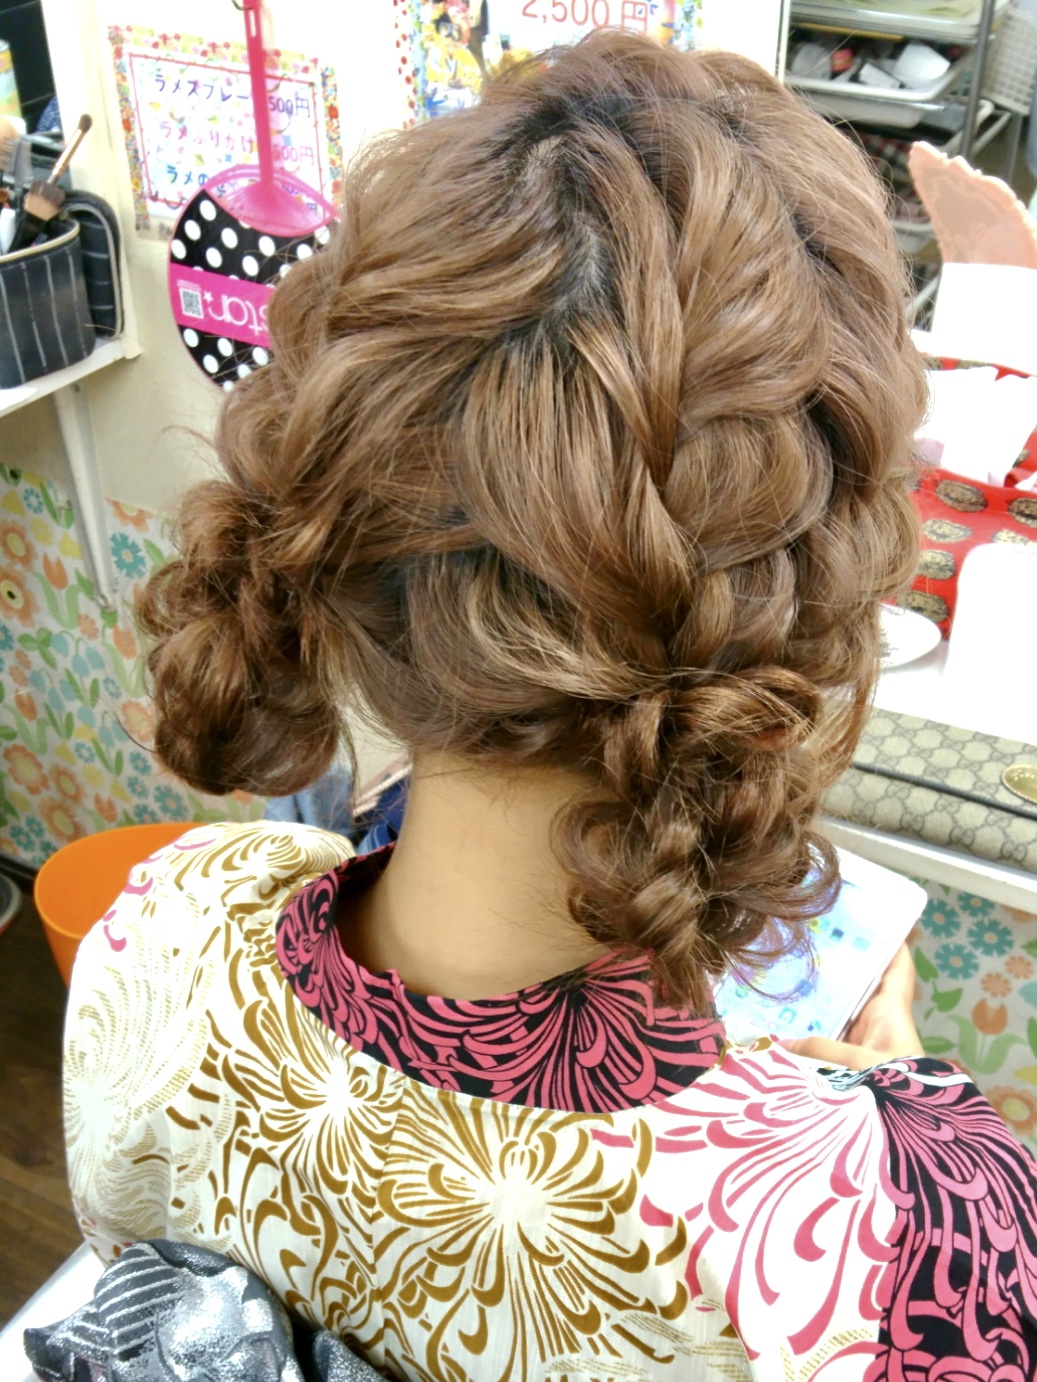 バリバリ可愛い編み込みツイン下めお団子 新宿歌舞伎町の美容室 Hair Set Up S ヘアセット メイク 着付け